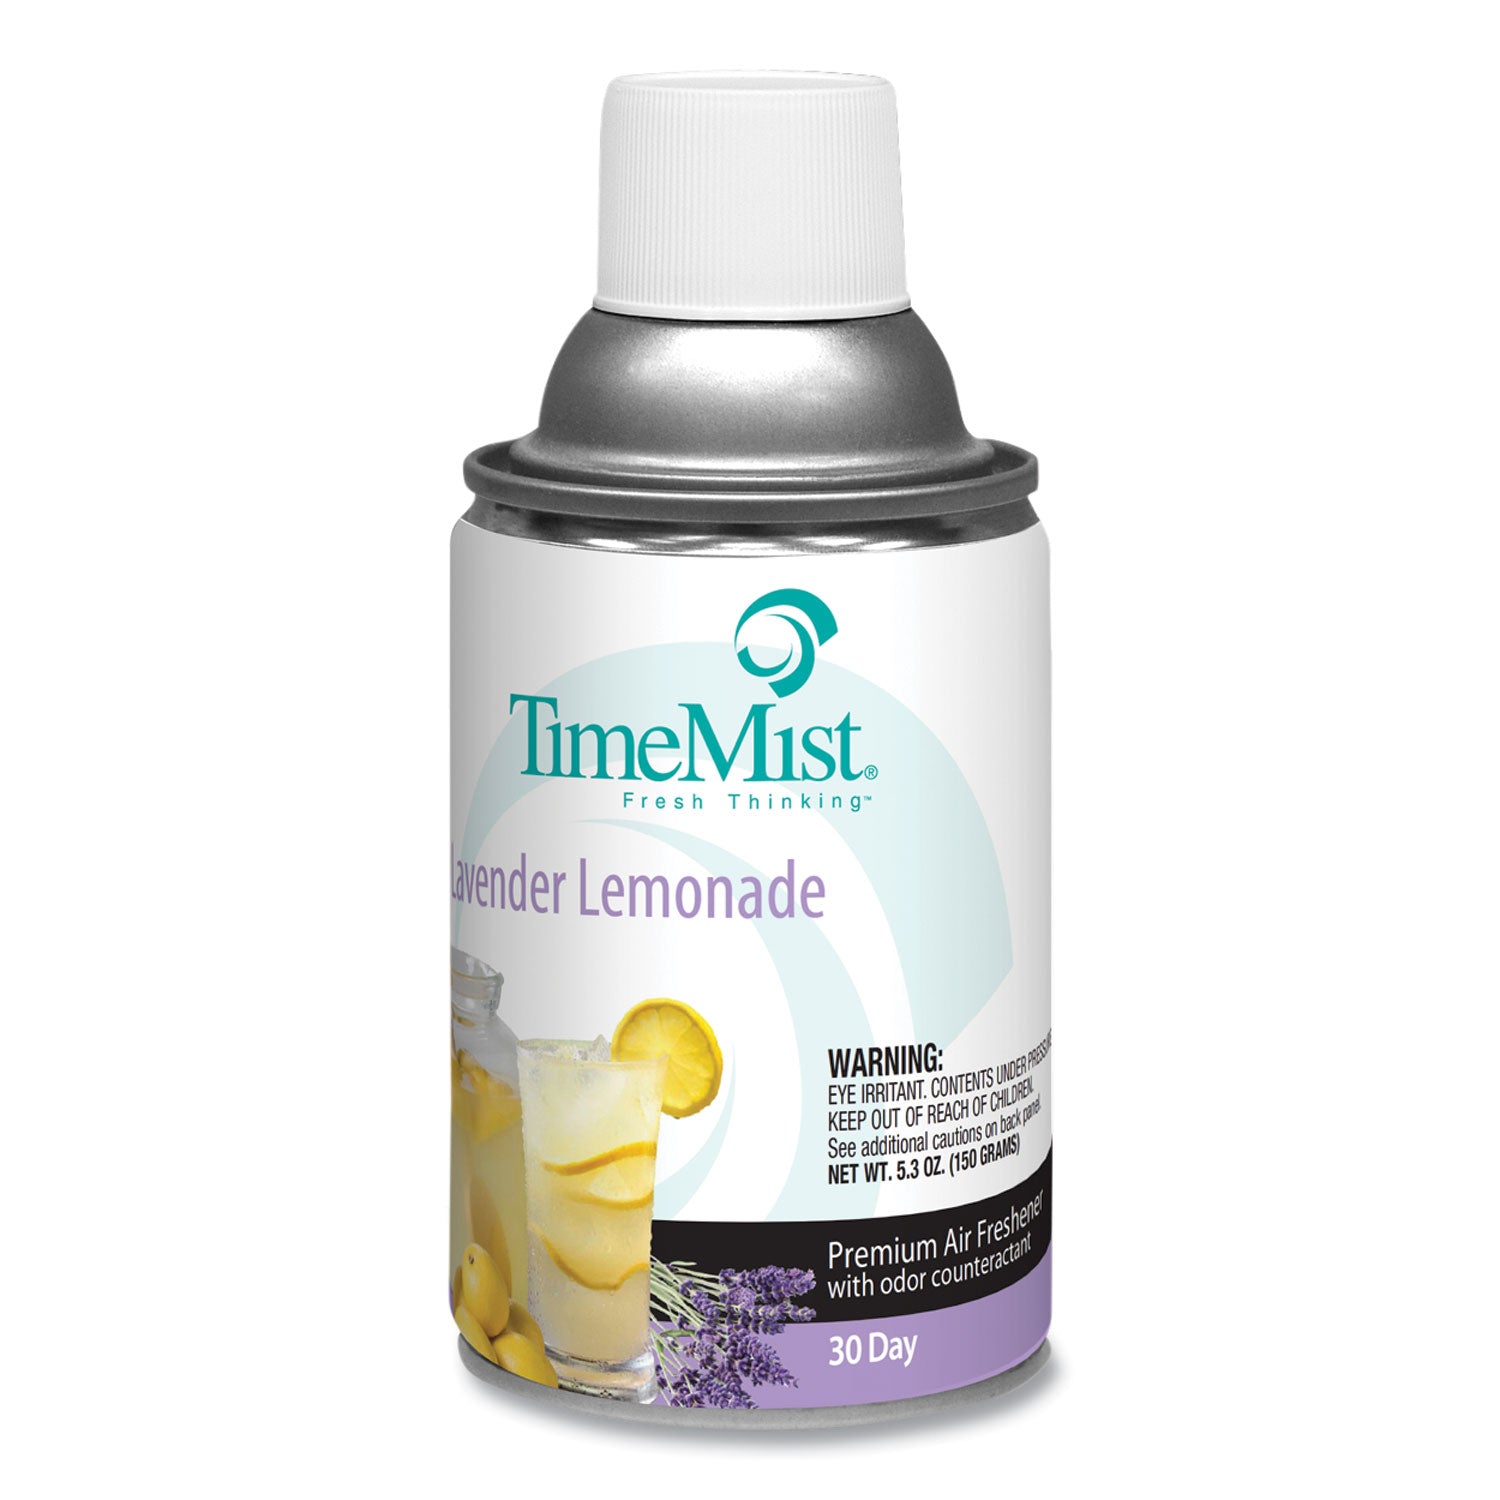 Premium Metered Air Freshener Refill, Lavender Lemonade, 5.3 oz Aerosol Spray, 12/Carton - 2